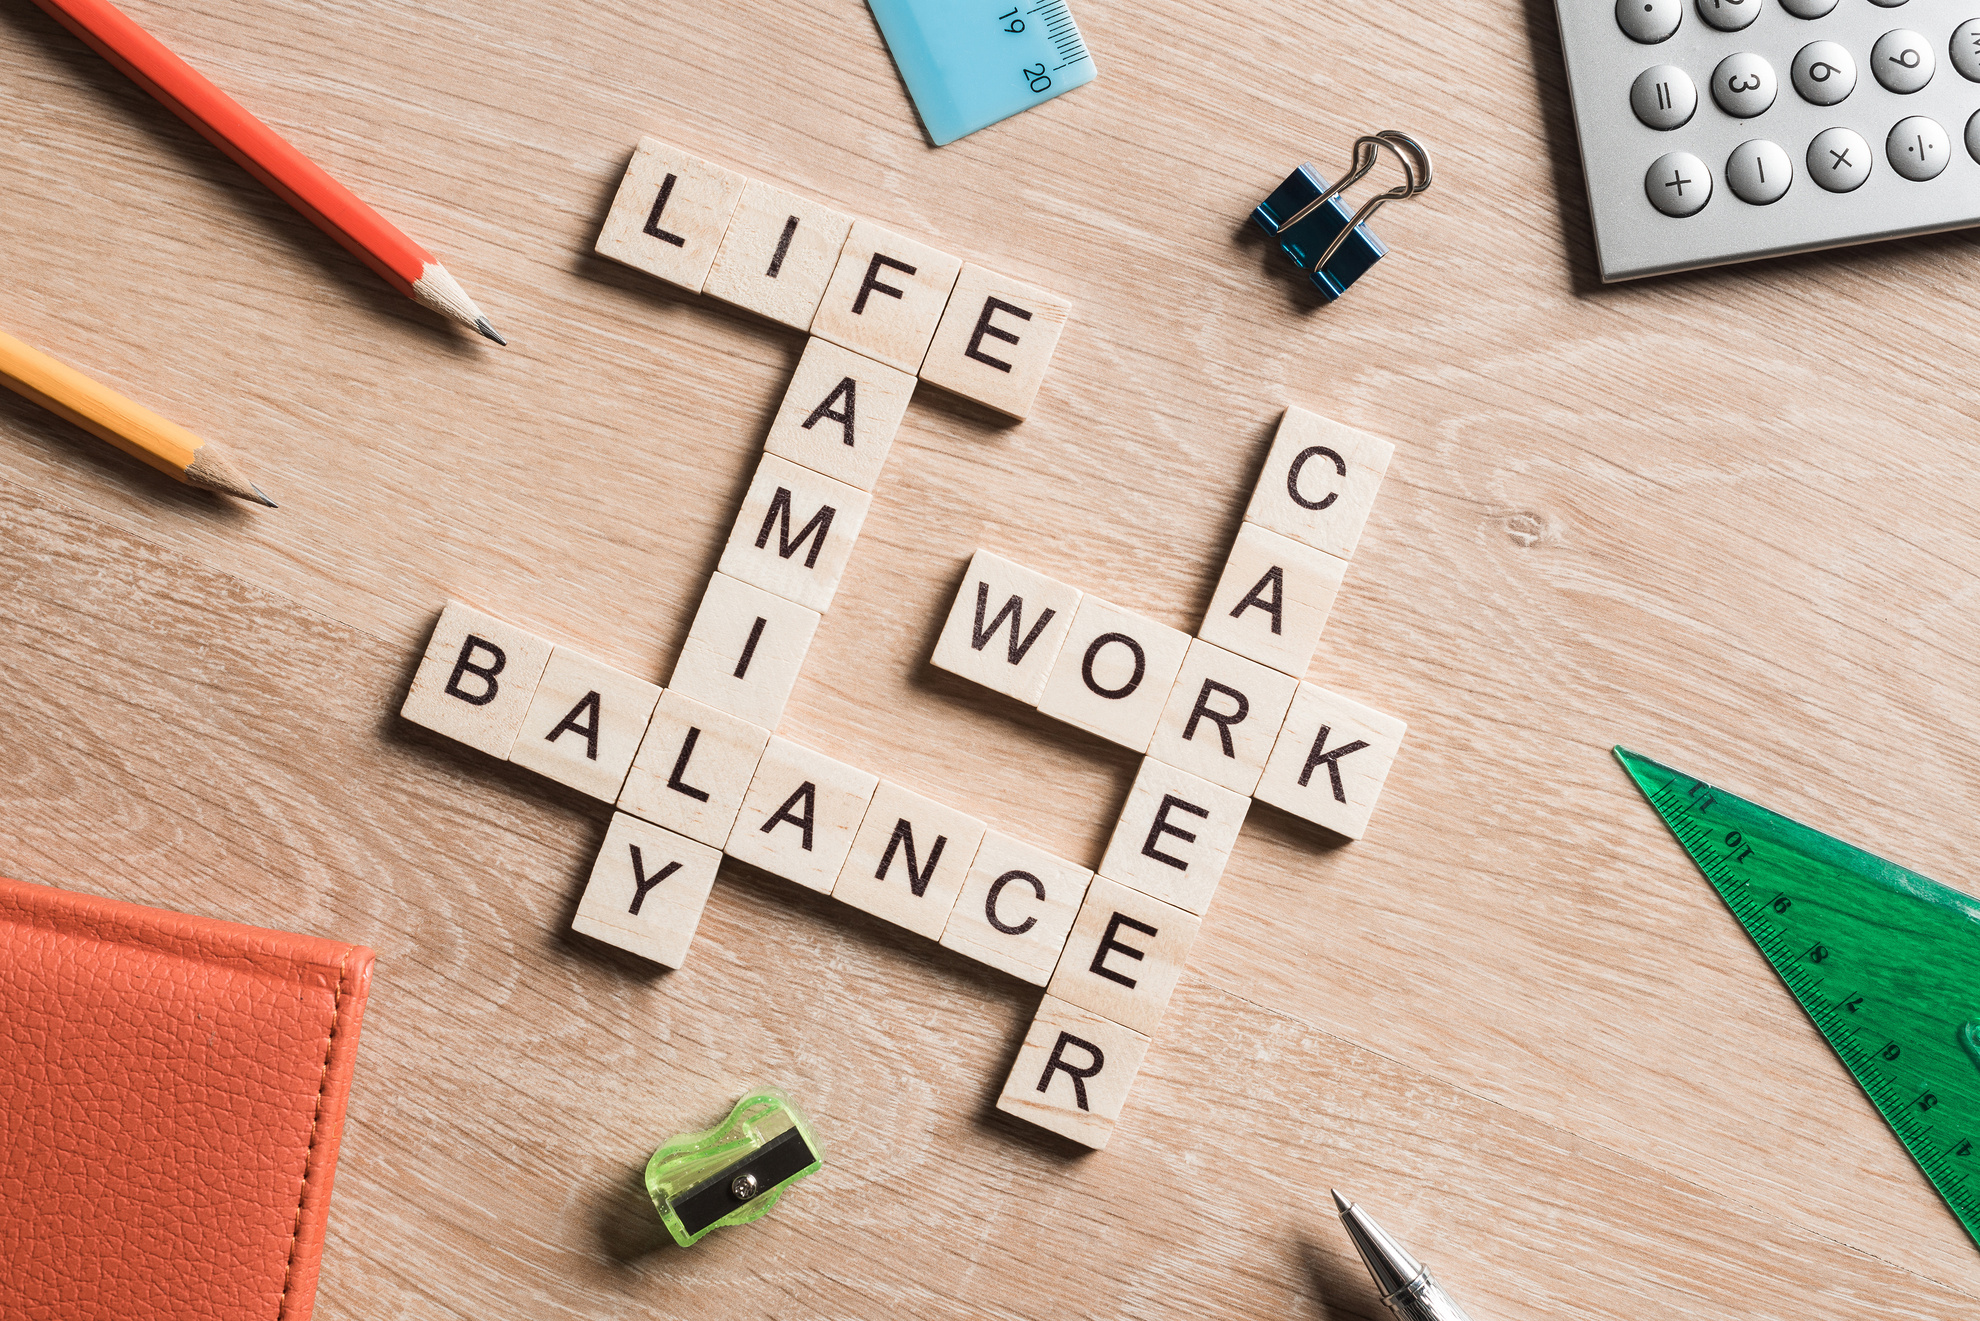 Du betrachtest gerade Work Life Balance zur Vermeidung von Burnout